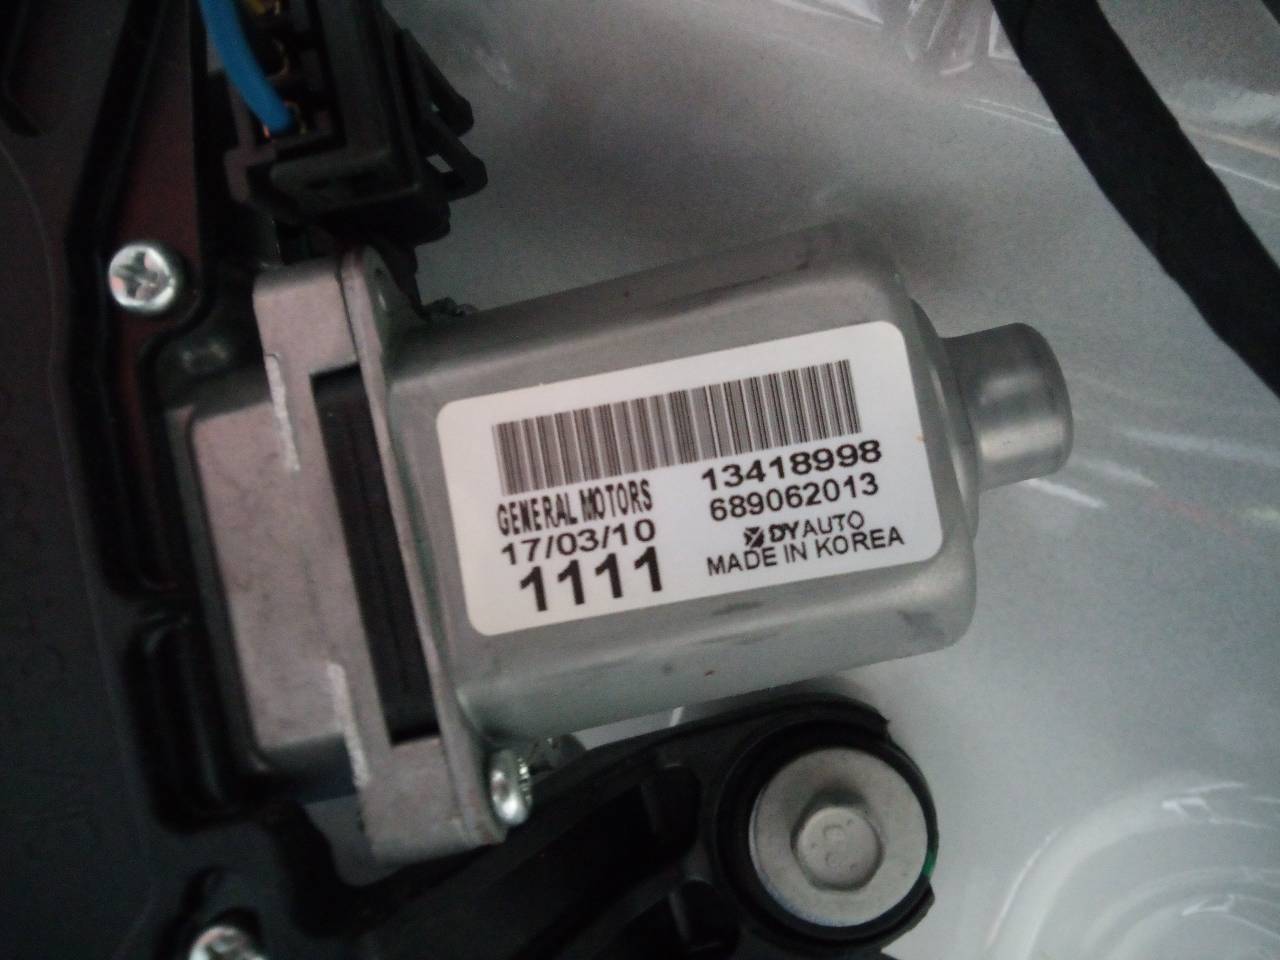 OPEL Astra K (2015-2021) Моторчик заднего стеклоочистителя 13418998, 689062013 21830875